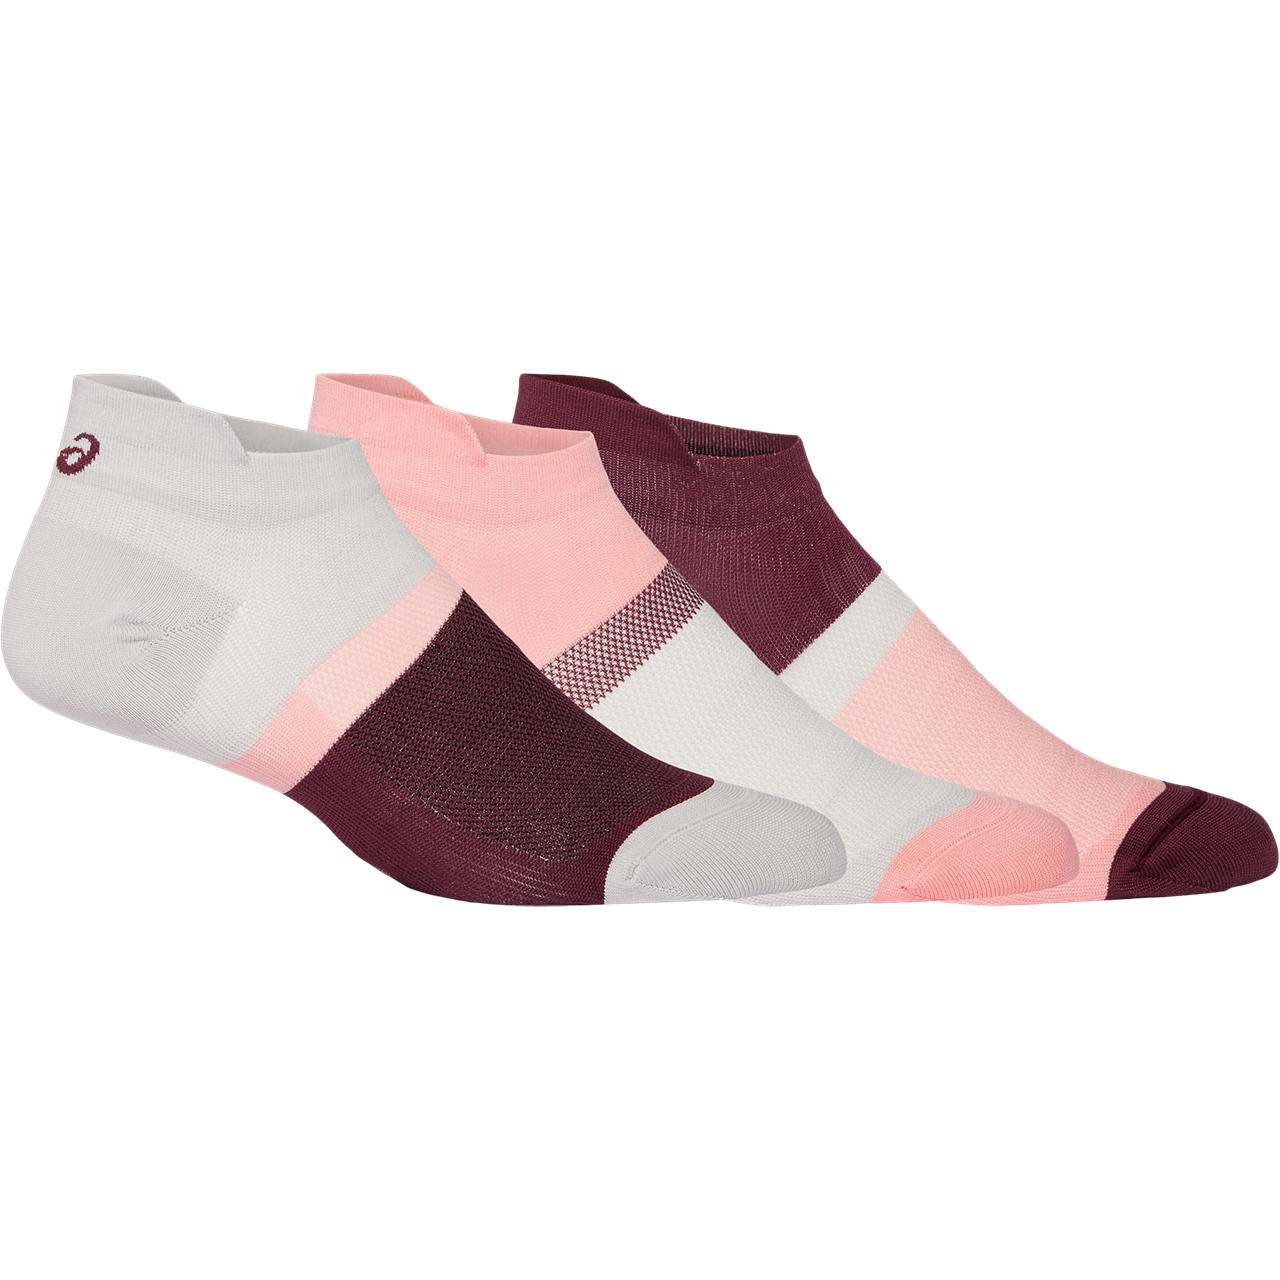 Bild von asics Color Block Ankle Socken - 3 Paar - frosted rose